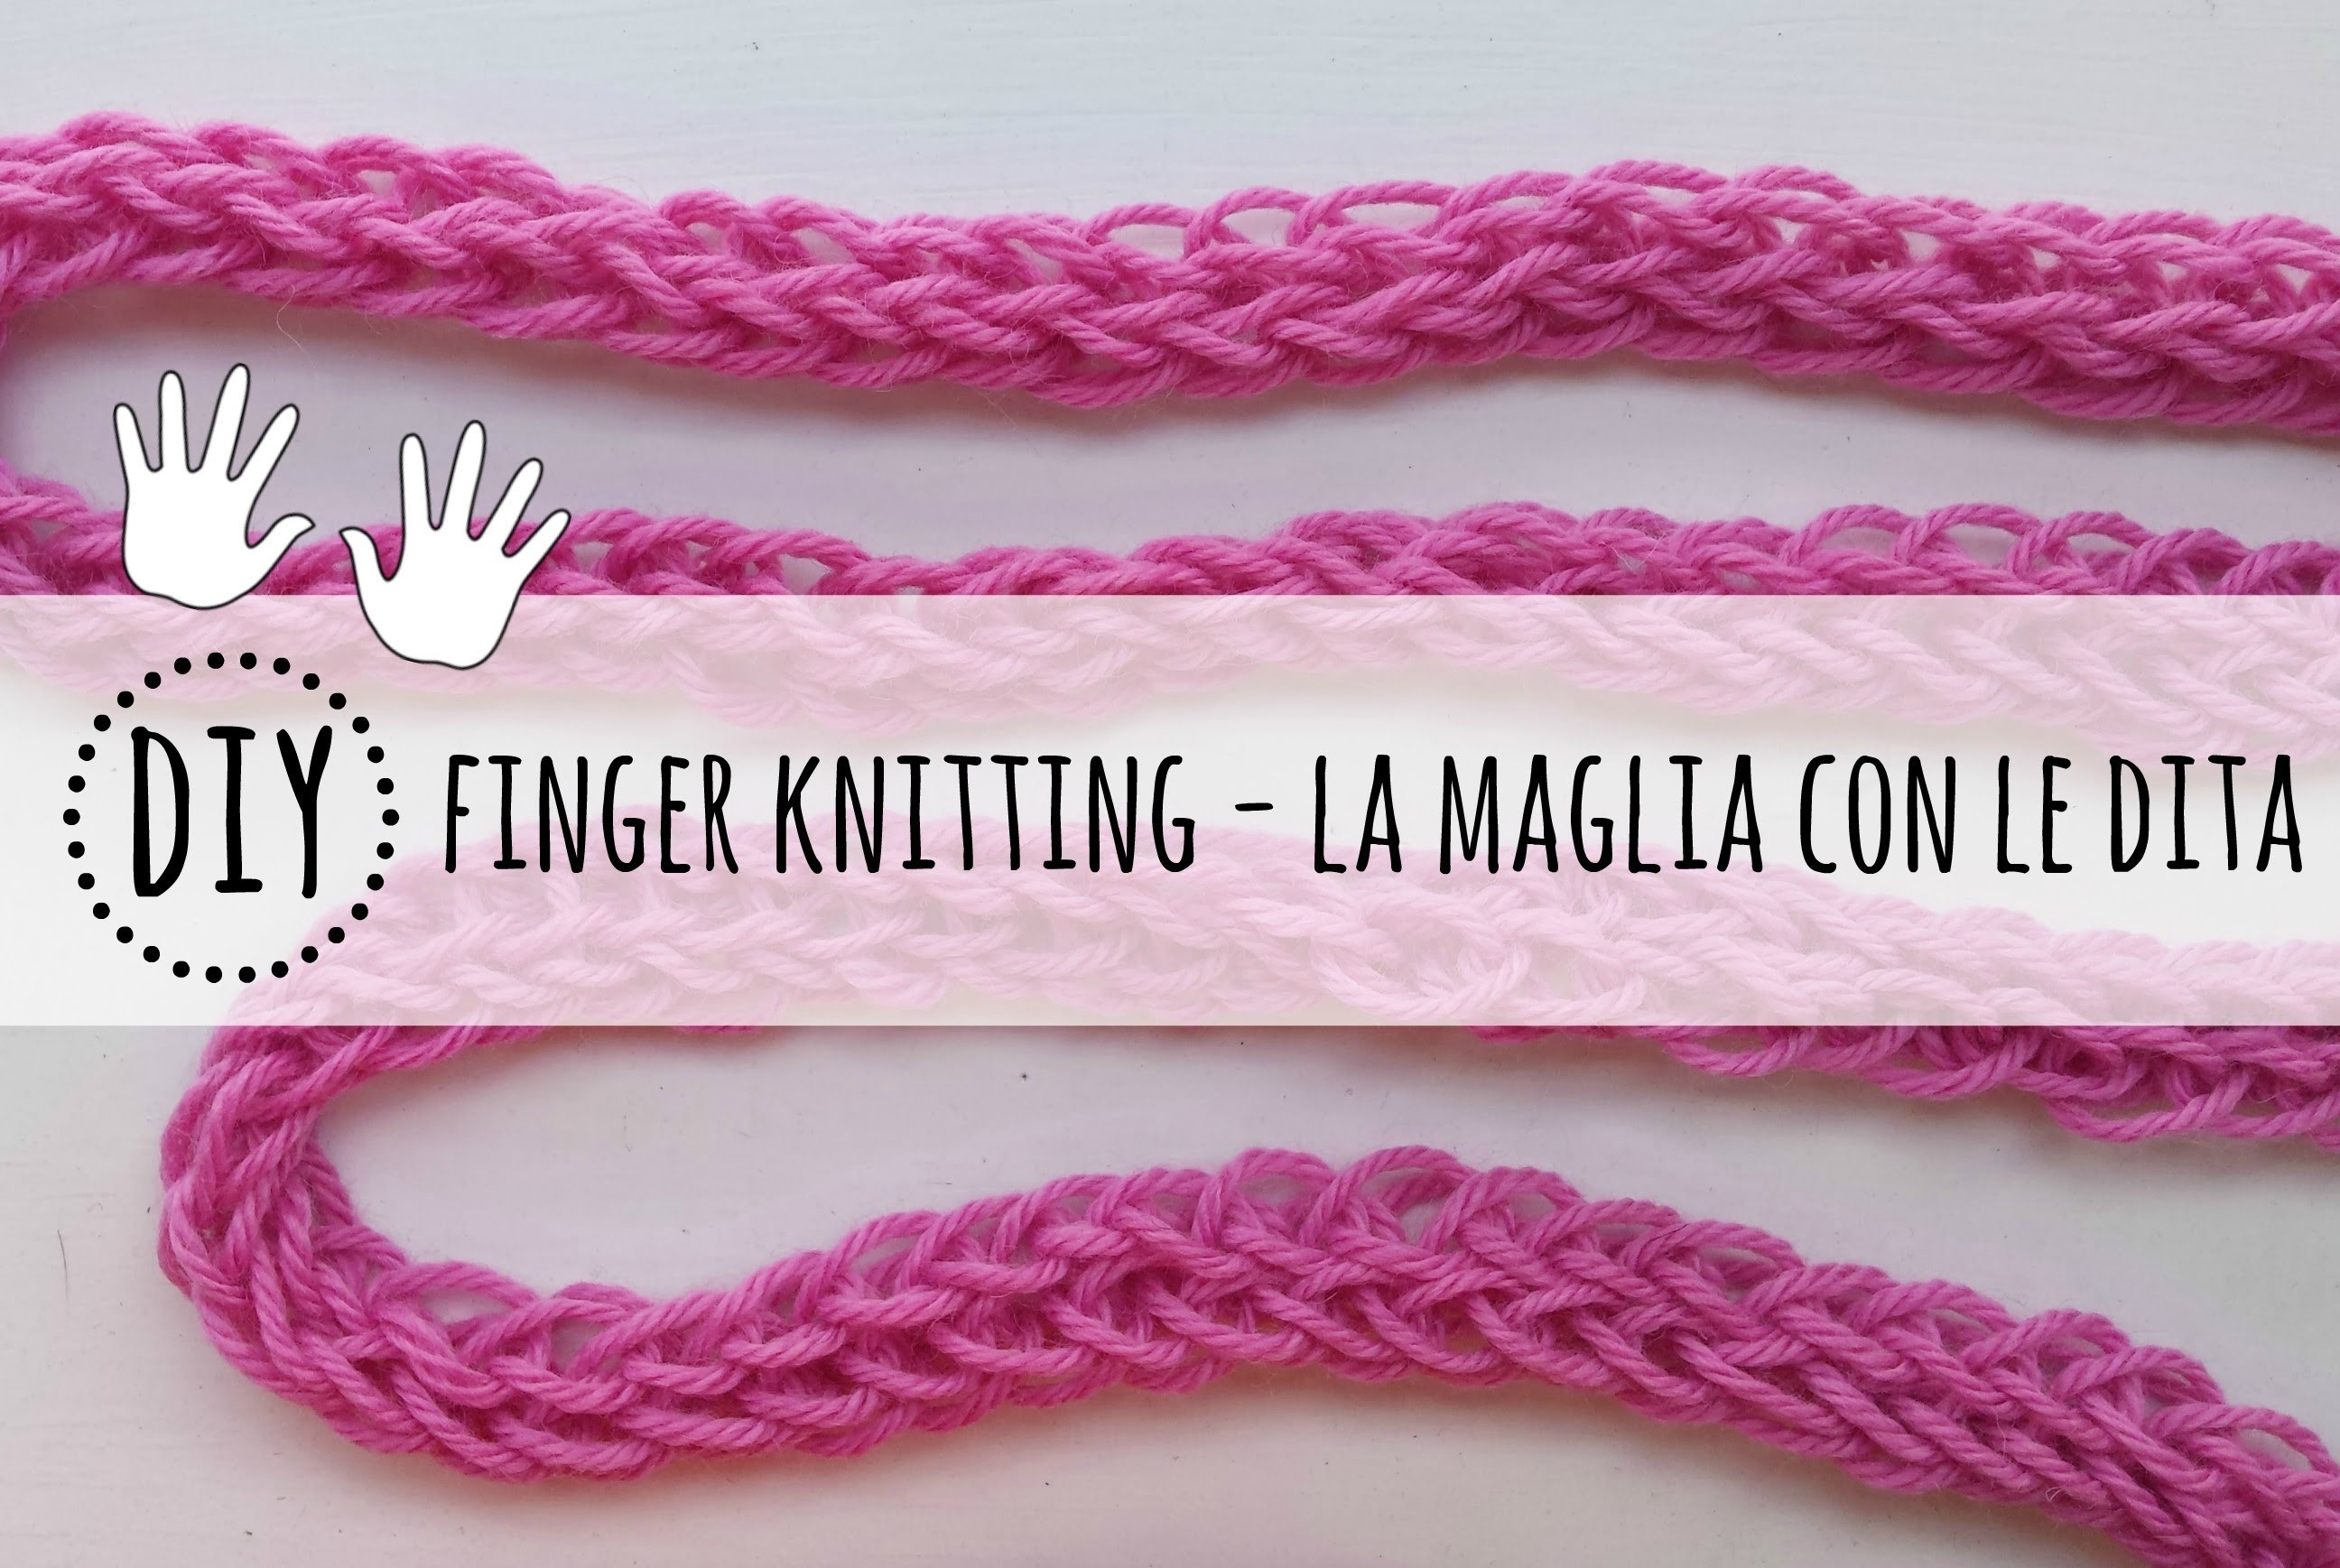 Come fare la maglia con le dita - finger knitting tutorial